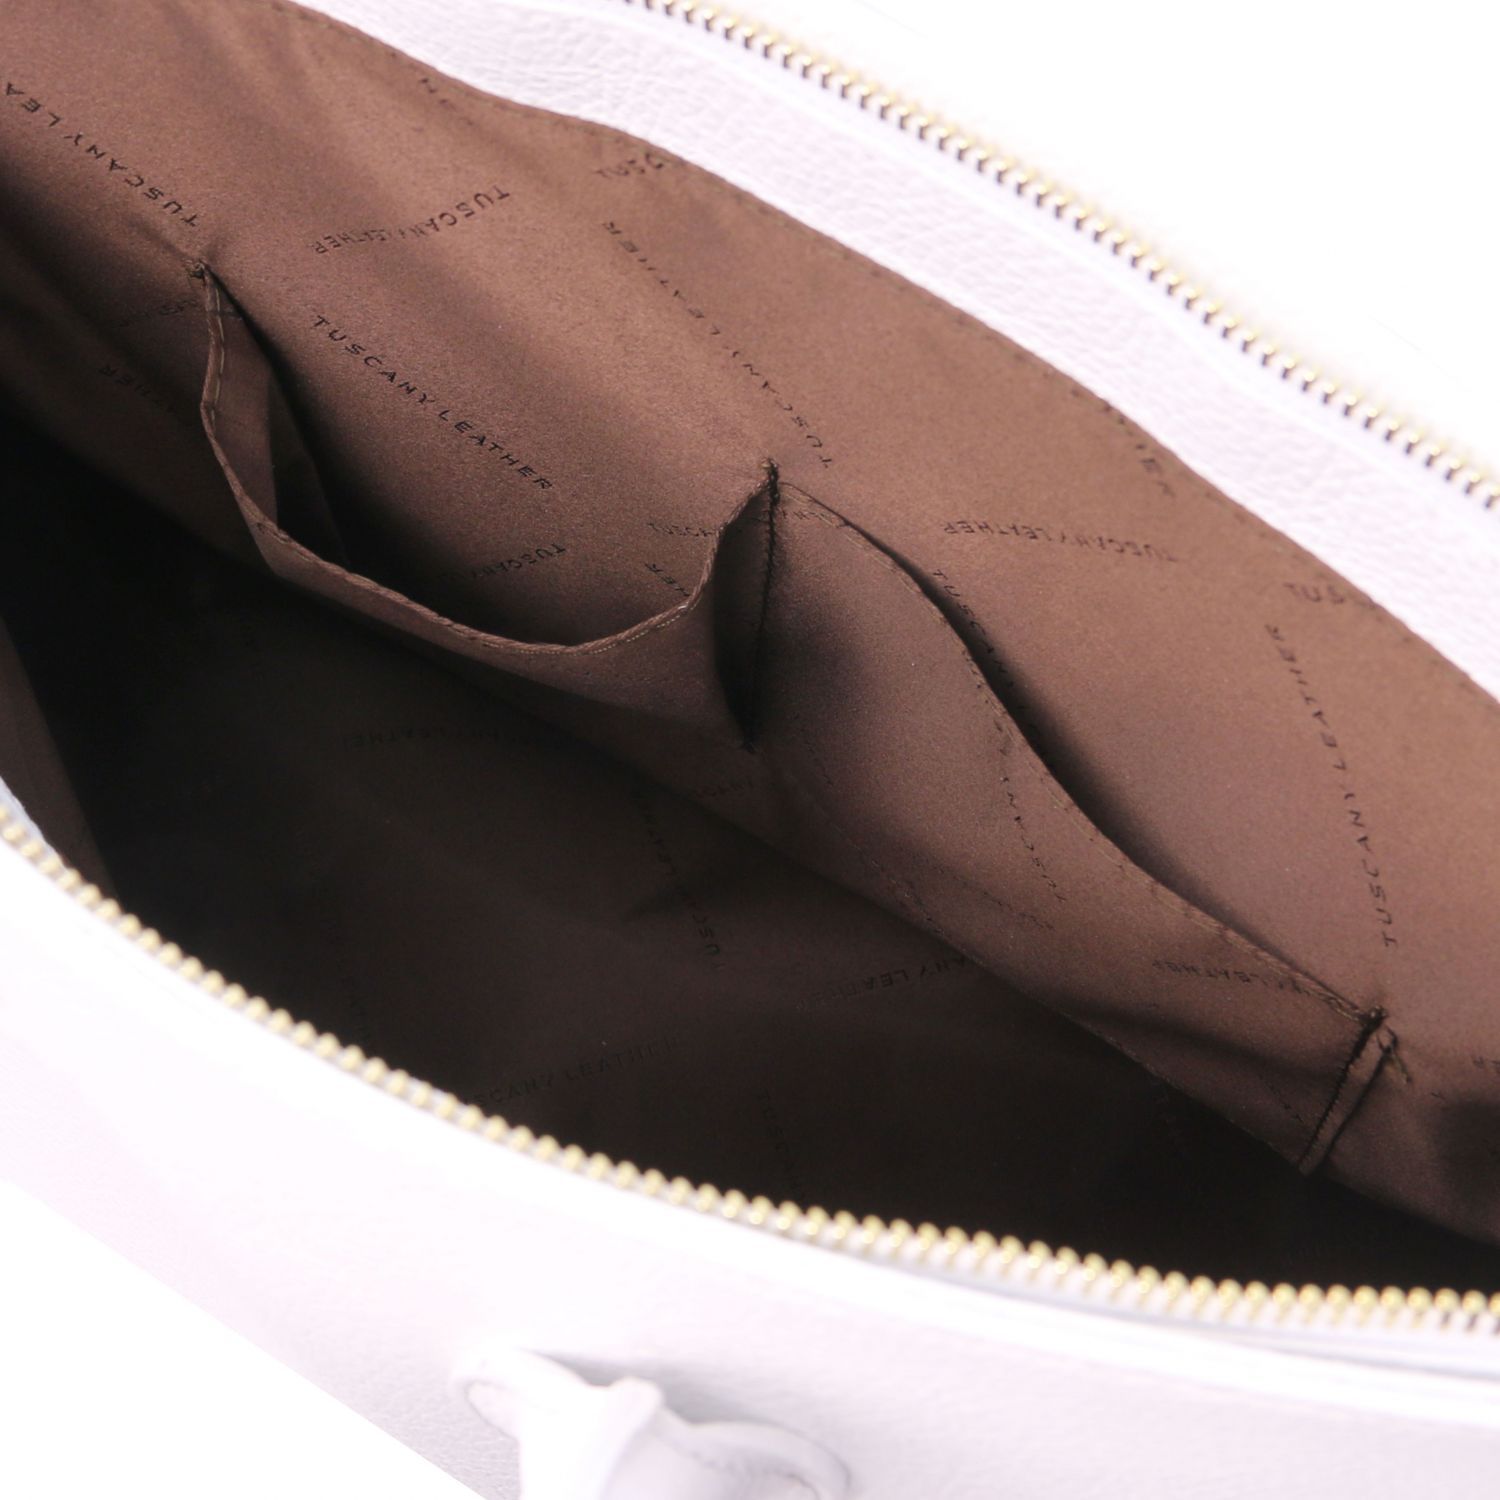 TL Bag - Sac à main pour femme avec finitions couleur or - Blanc (TL141529)